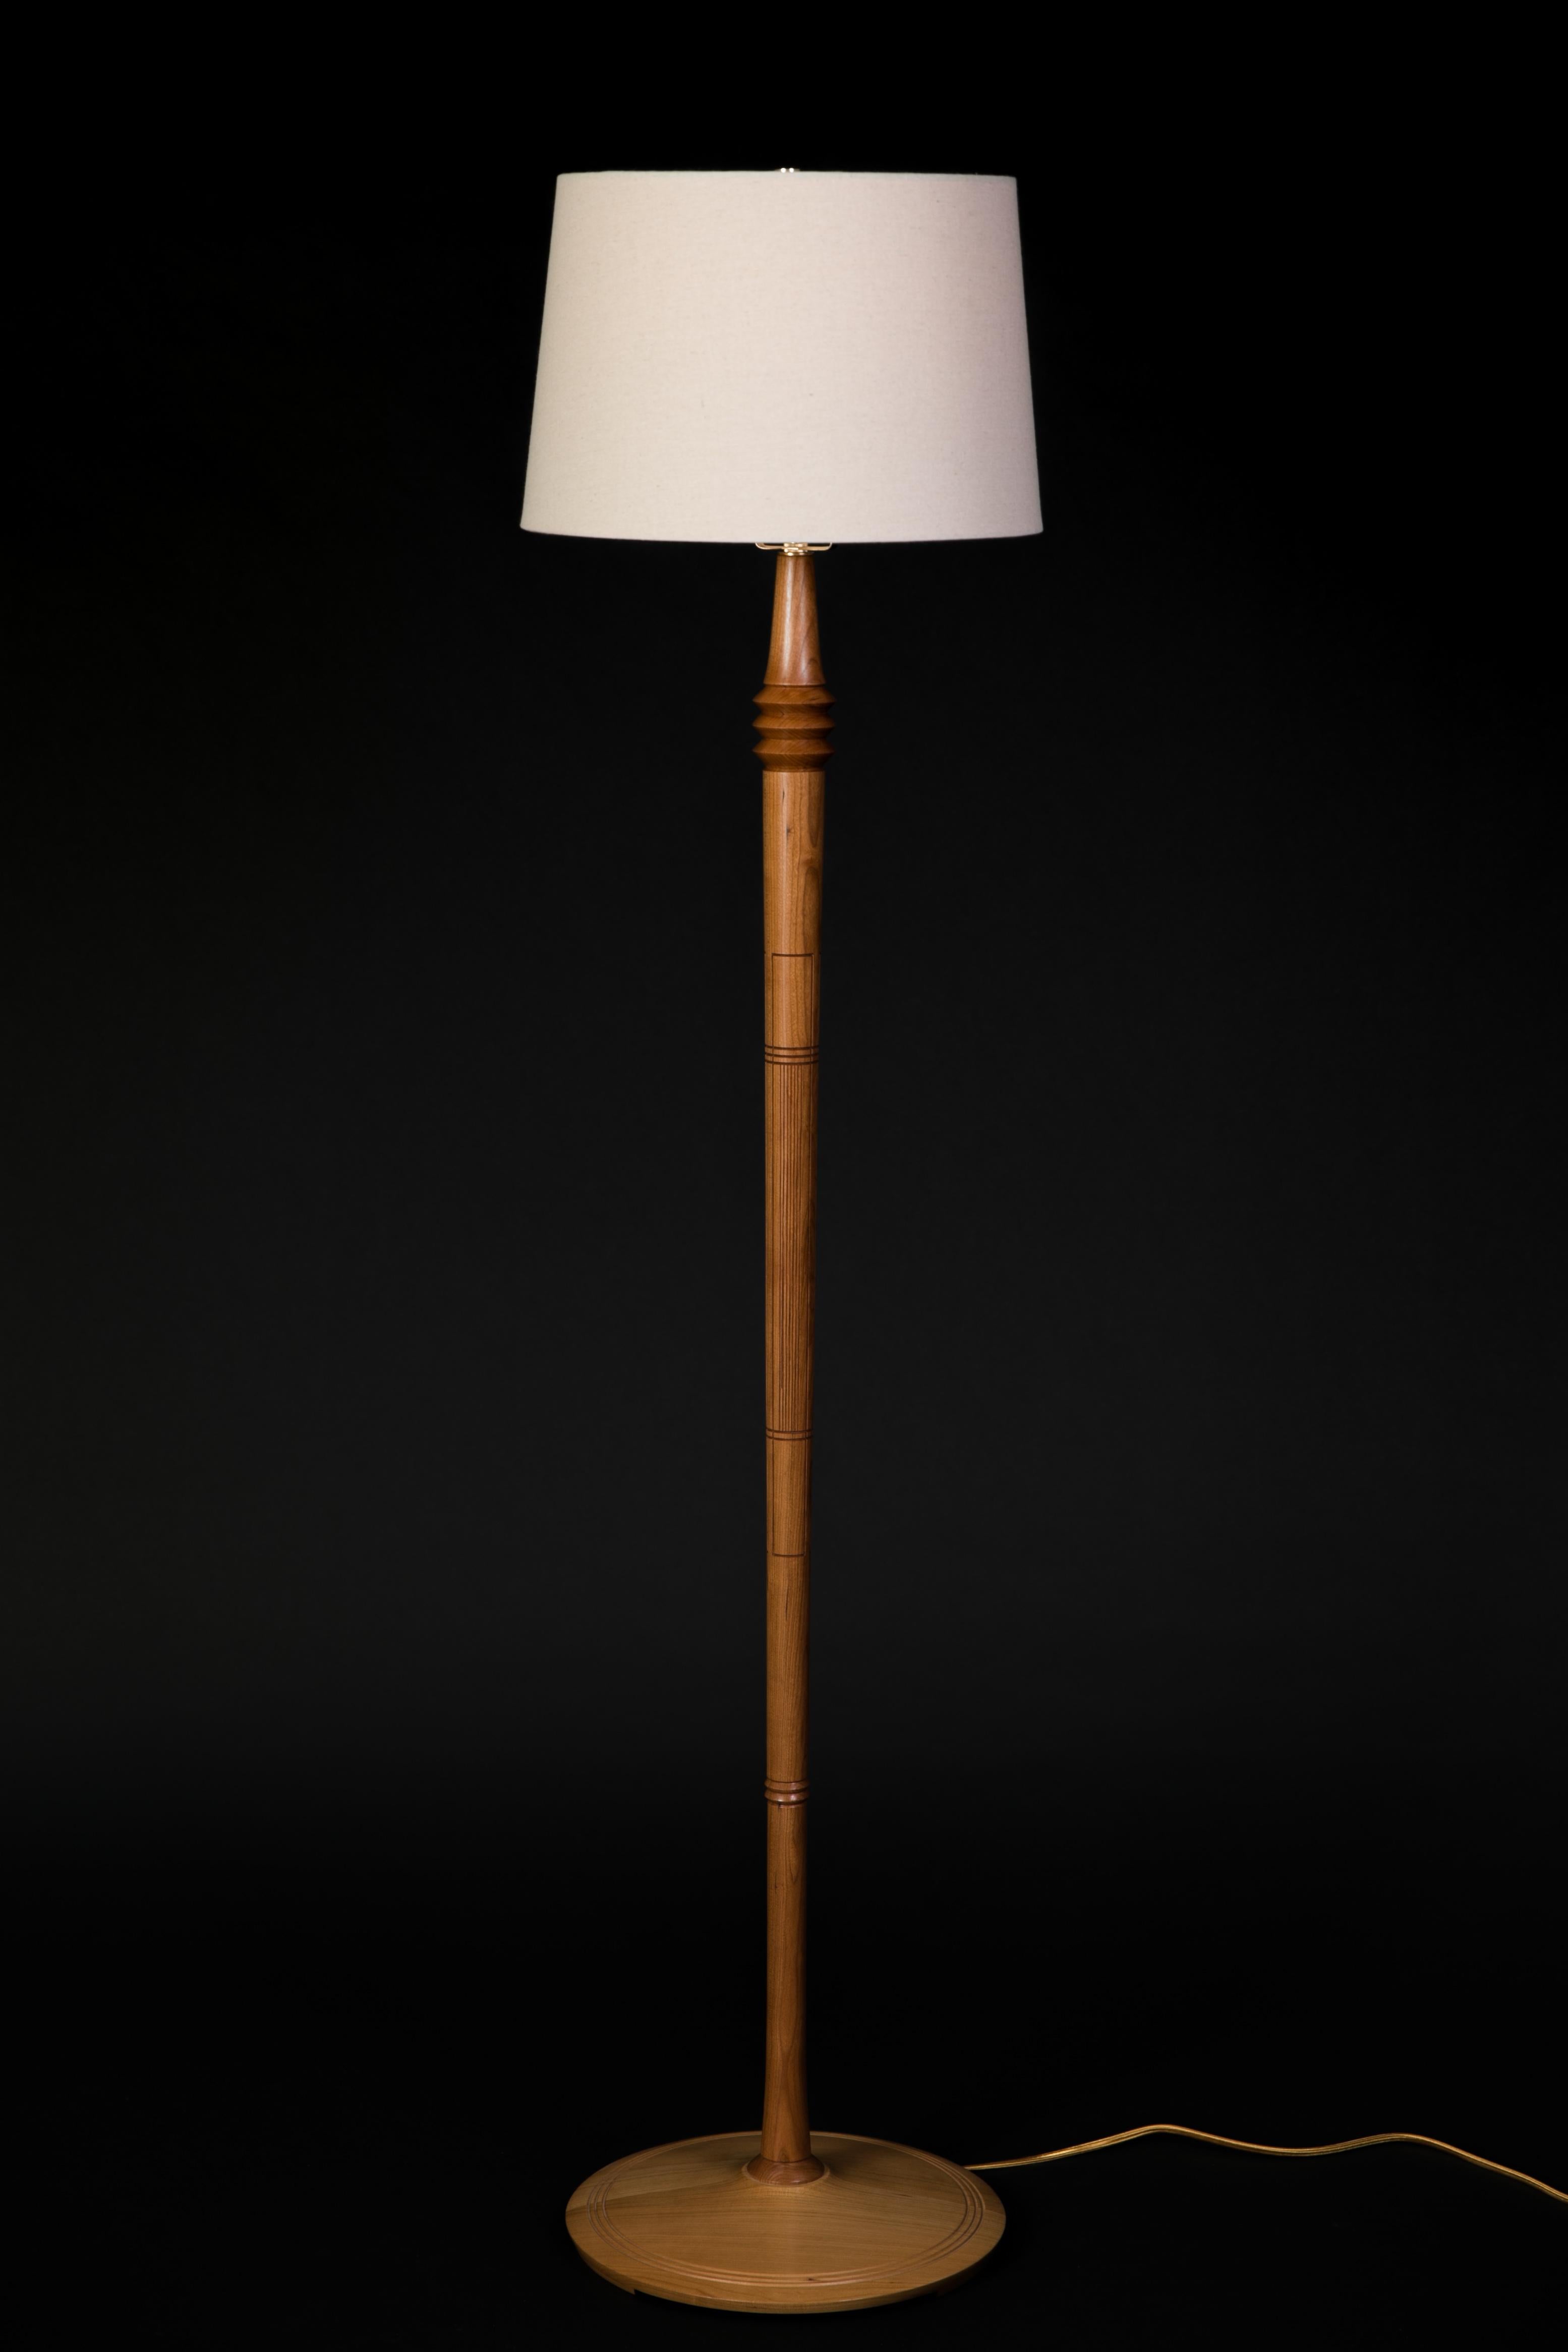 Ausgehend von einer Grundform, die einer anderen Lampe in meiner Sammlung ähnelt, beinhaltet diese Lampe Detailarbeit, die Zeit und Geduld erfordert. Während eine Lampe die grundlegende Funktion hat, Licht zu spenden, fügen die Details dieser Lampe